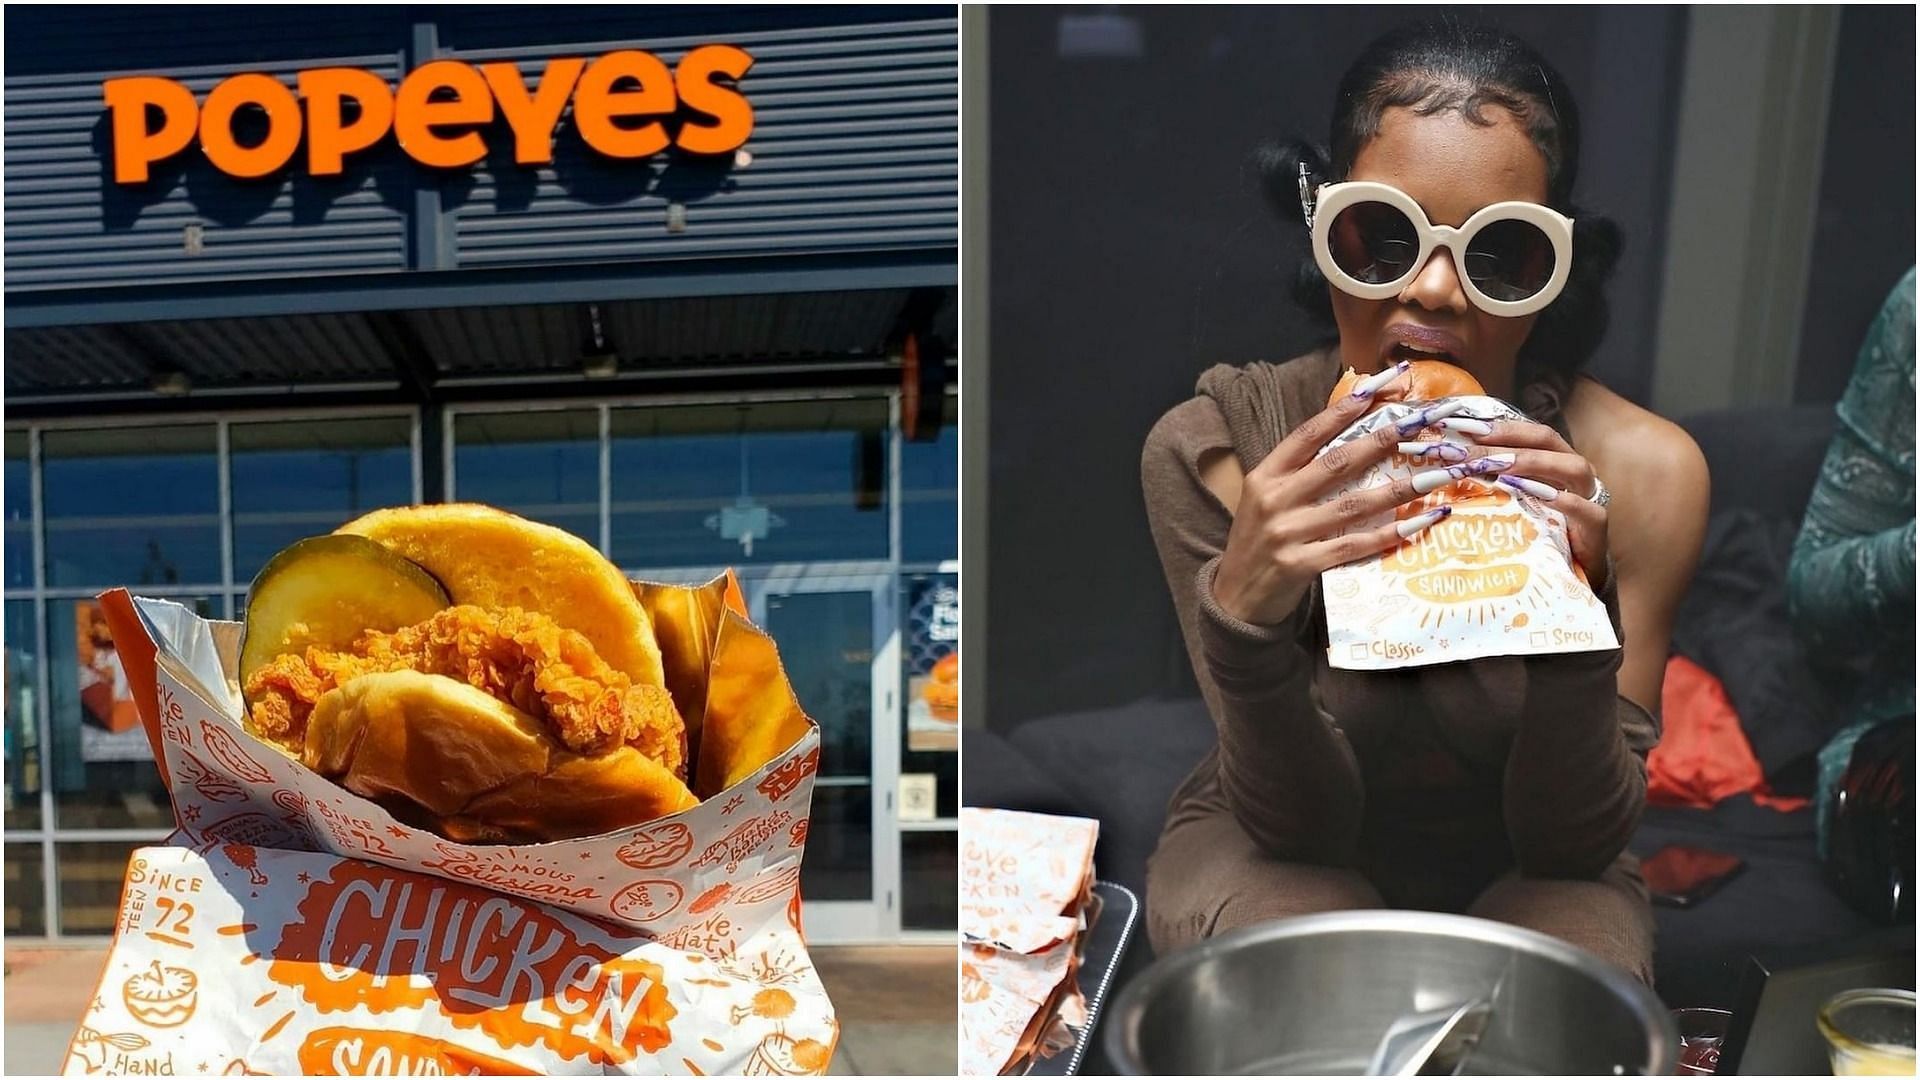 Popeyes chicken sandwich went viral in 2019 (Image via @popeyes/Instagram)